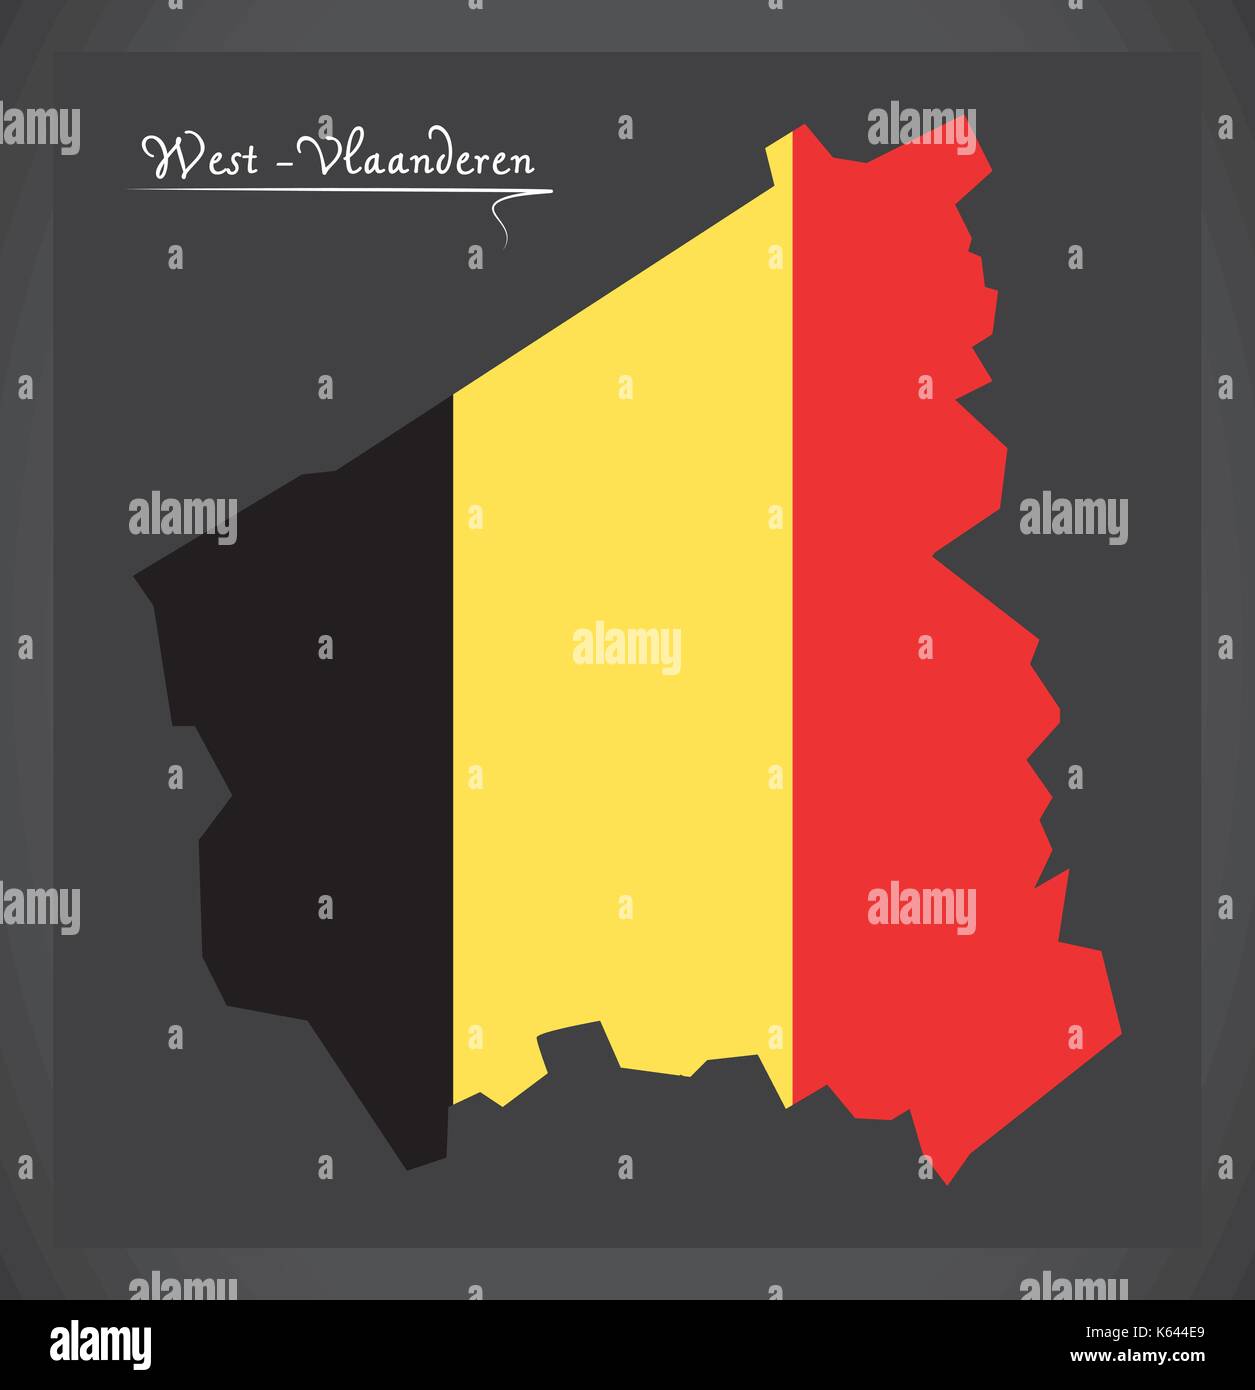 West-Vlaanderen map of Belgium with Belgian national flag illustration Stock Vector